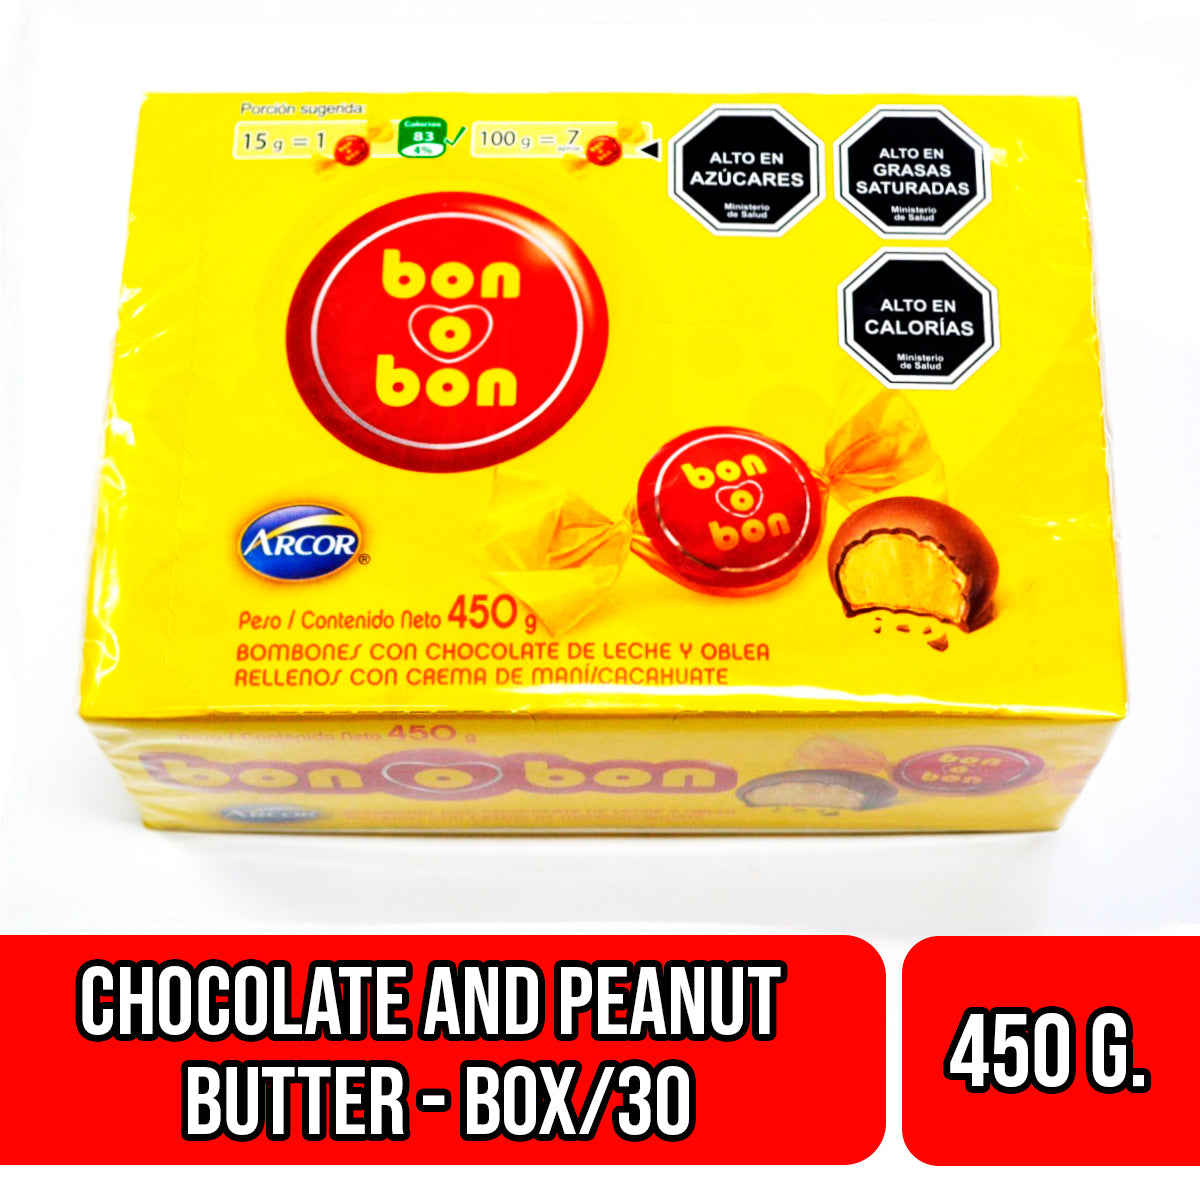 Bon o Bon Blanco, 450 g / 15.87 oz (Box of 30 units)